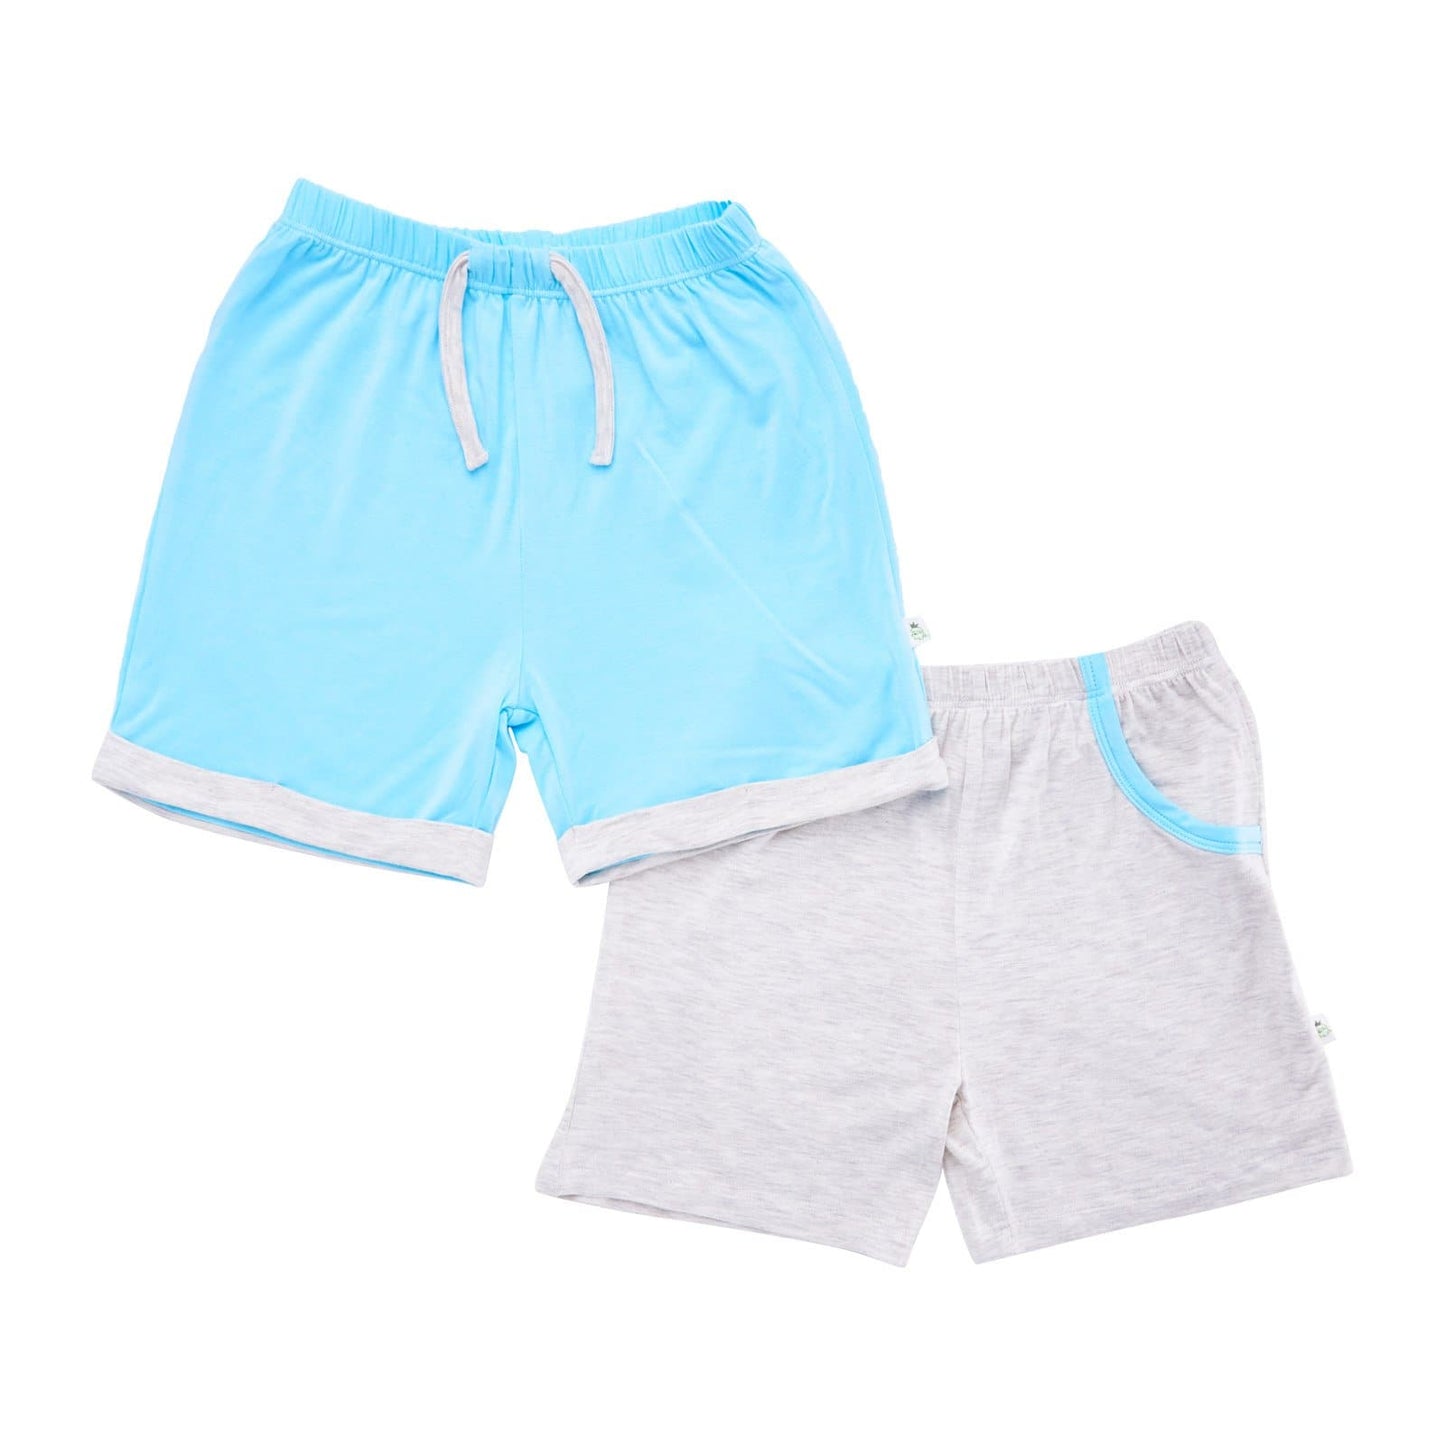 Boys - Shorts with Mocked Pocket/Drawstring (Sandwash Grey & Turquoise)